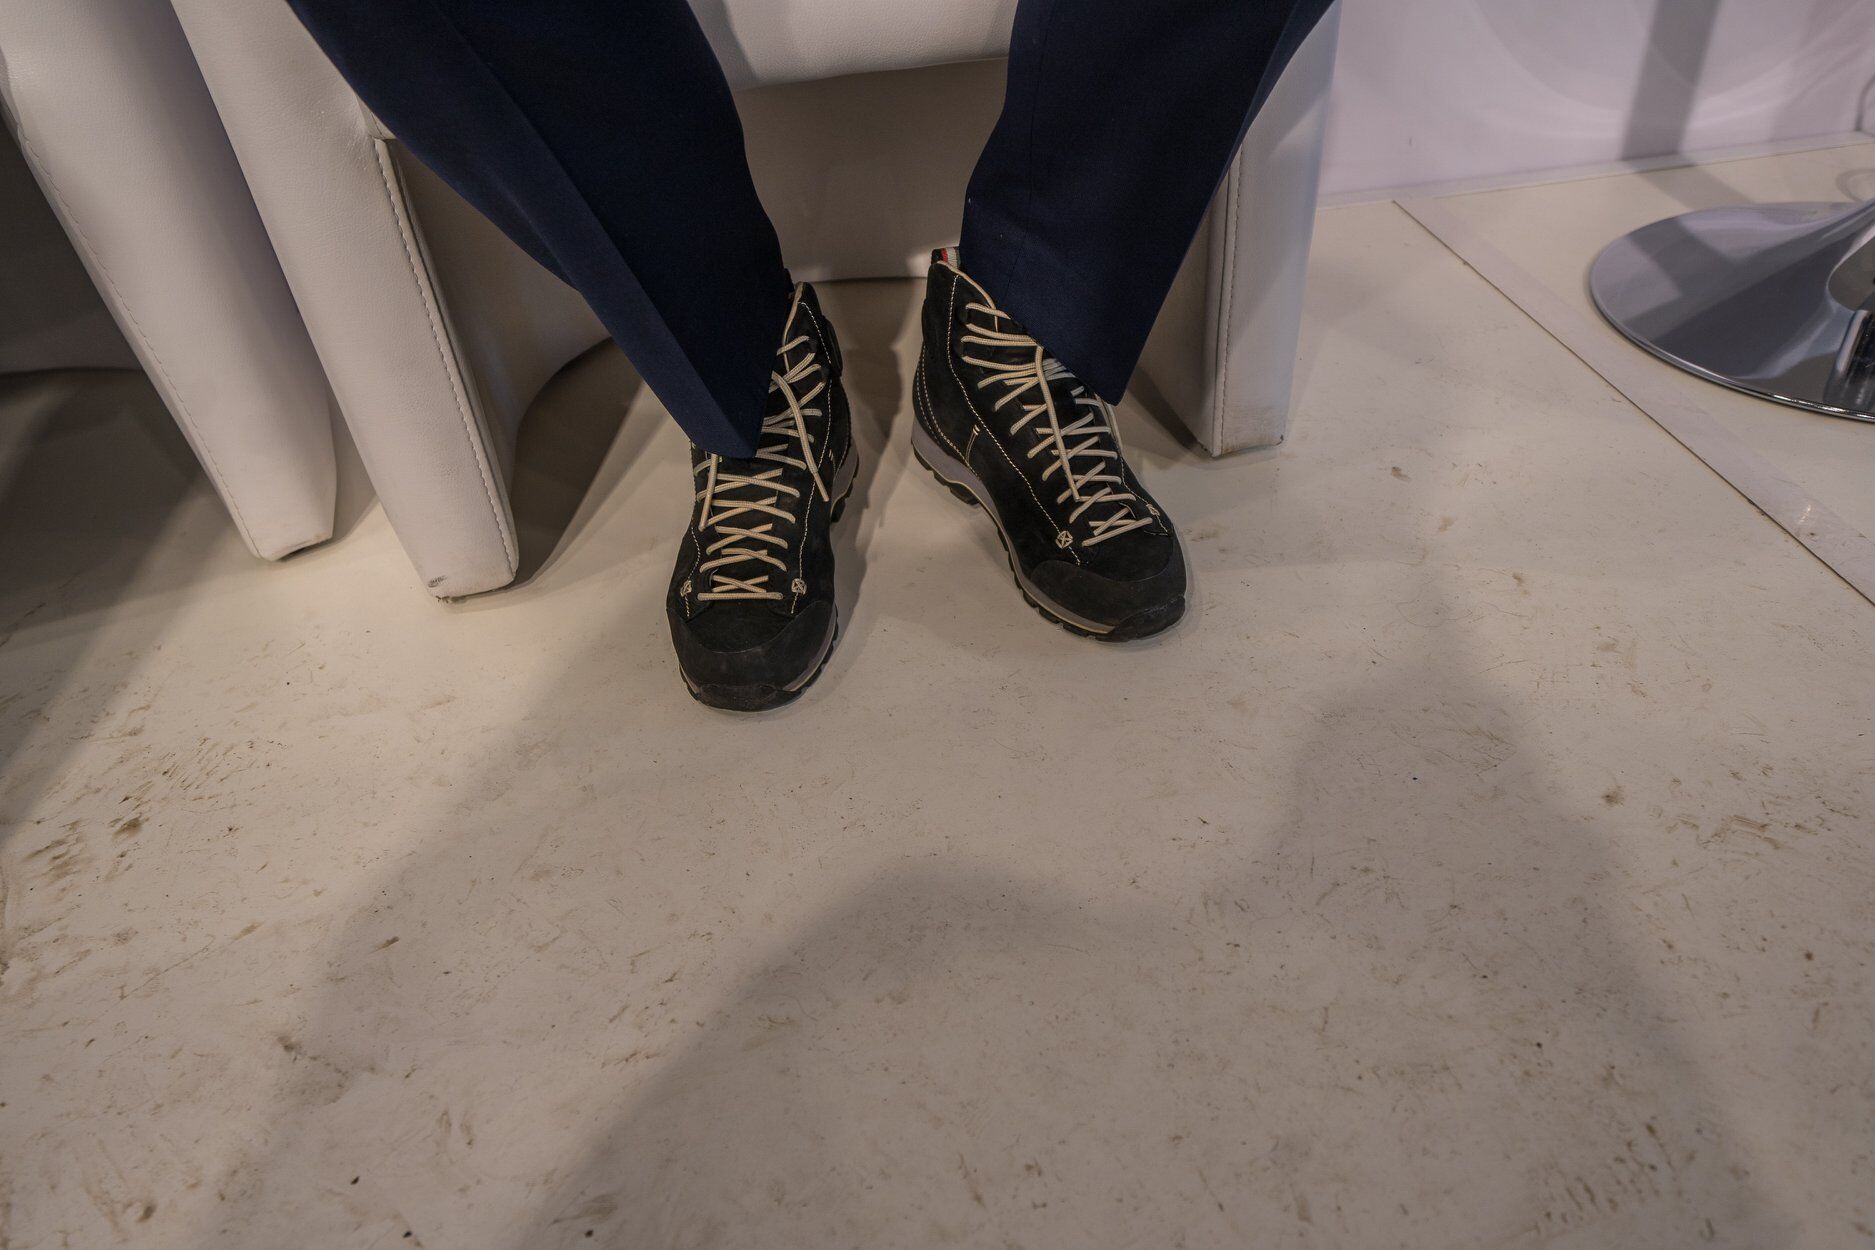 "Меховые носочки с совами?": сеть рассмешила "деловая мода" в Давосе